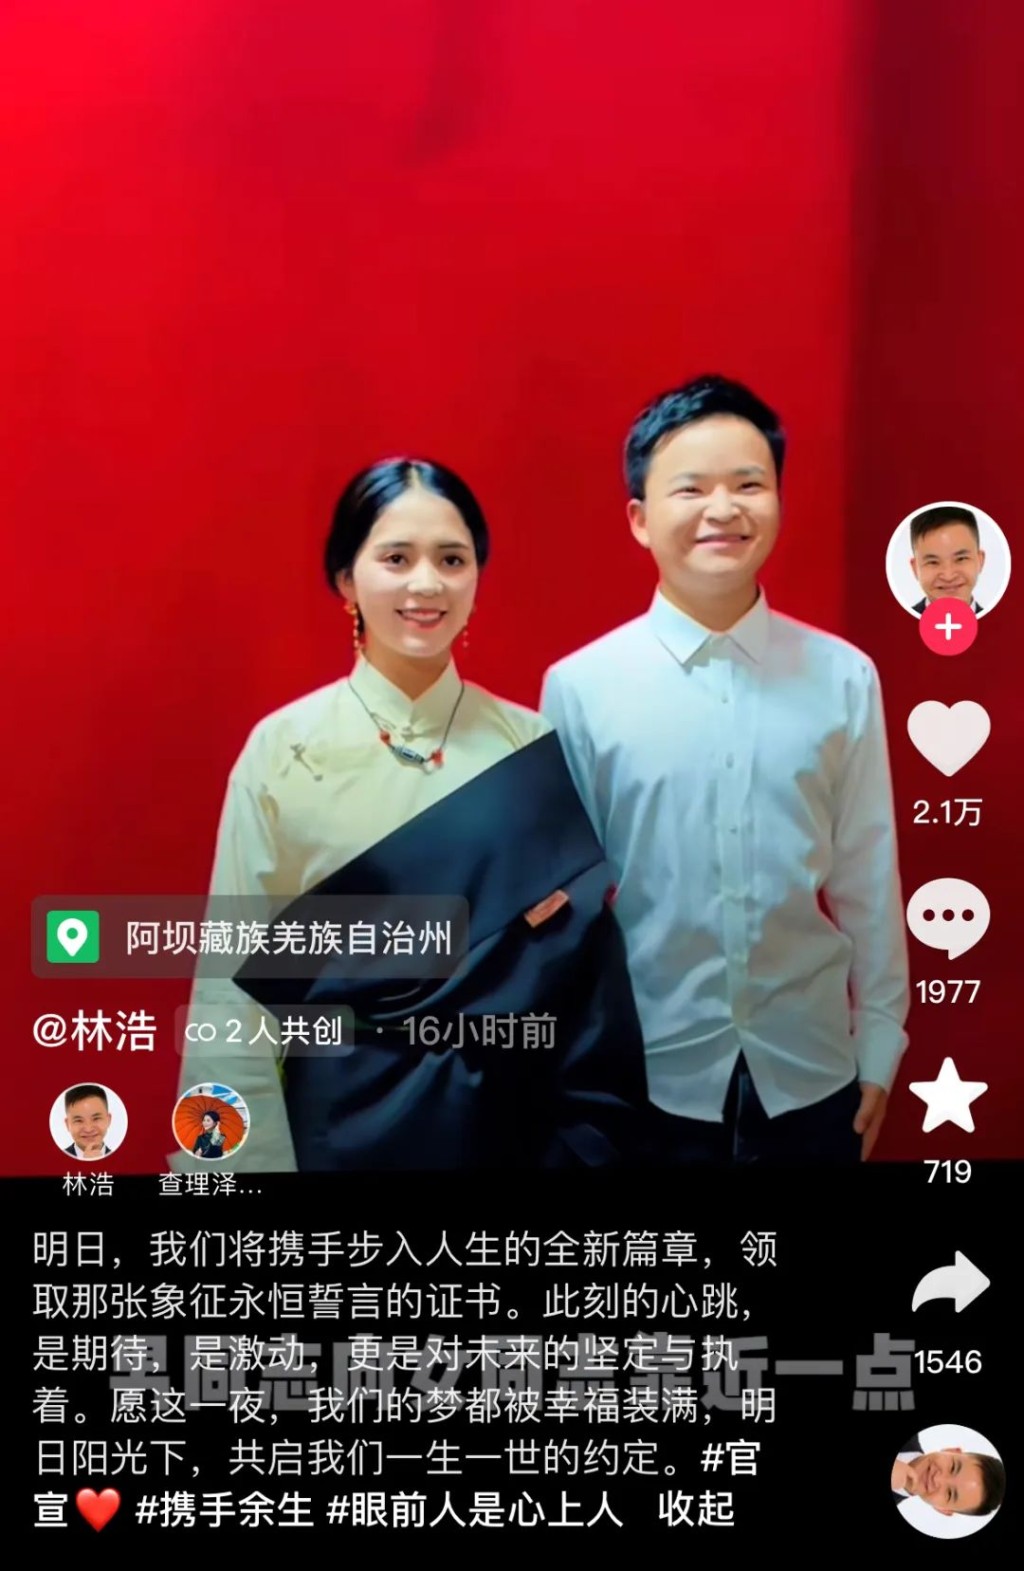 汶川「抗震小英雄」林浩宣布结婚。